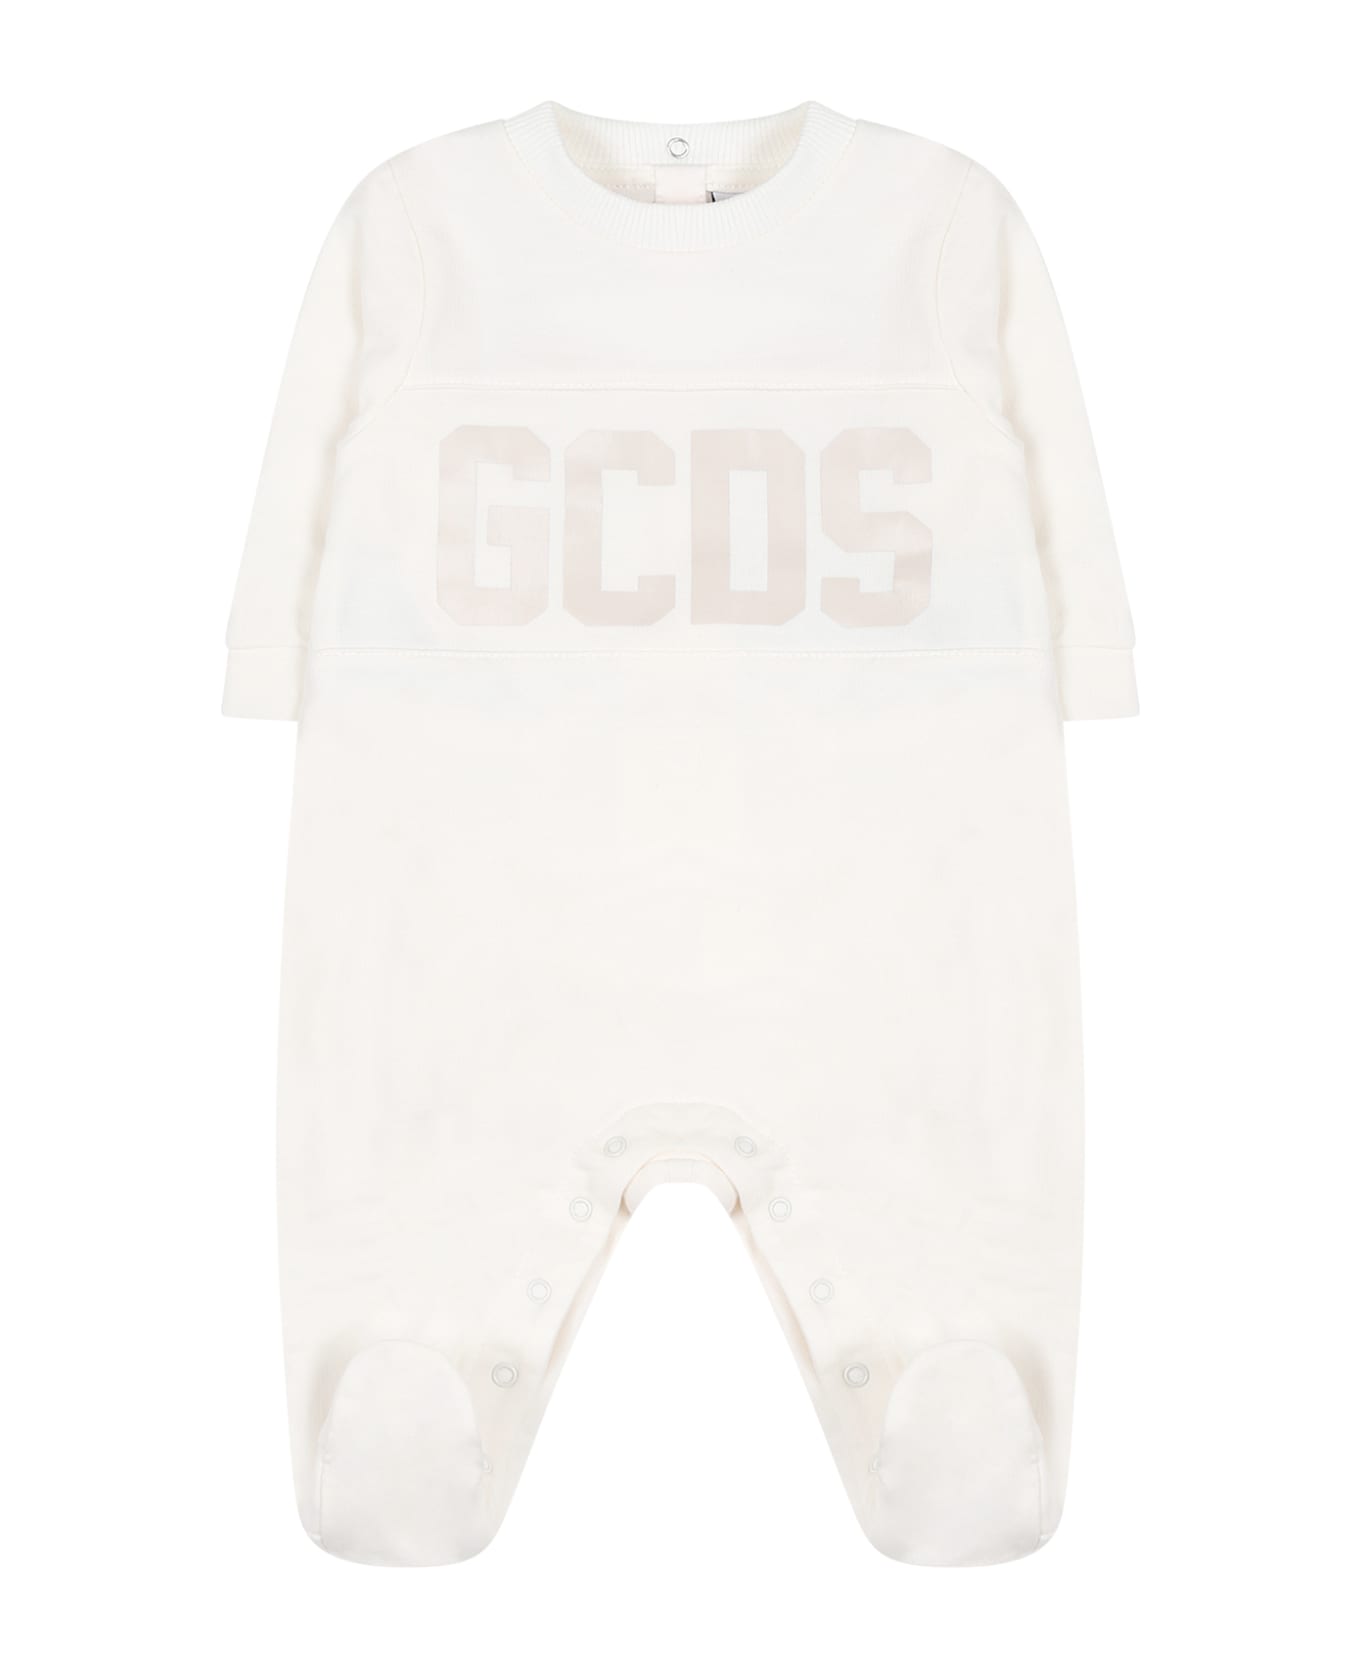 GCDS Mini White Babygrow For Babykids With Logo - White